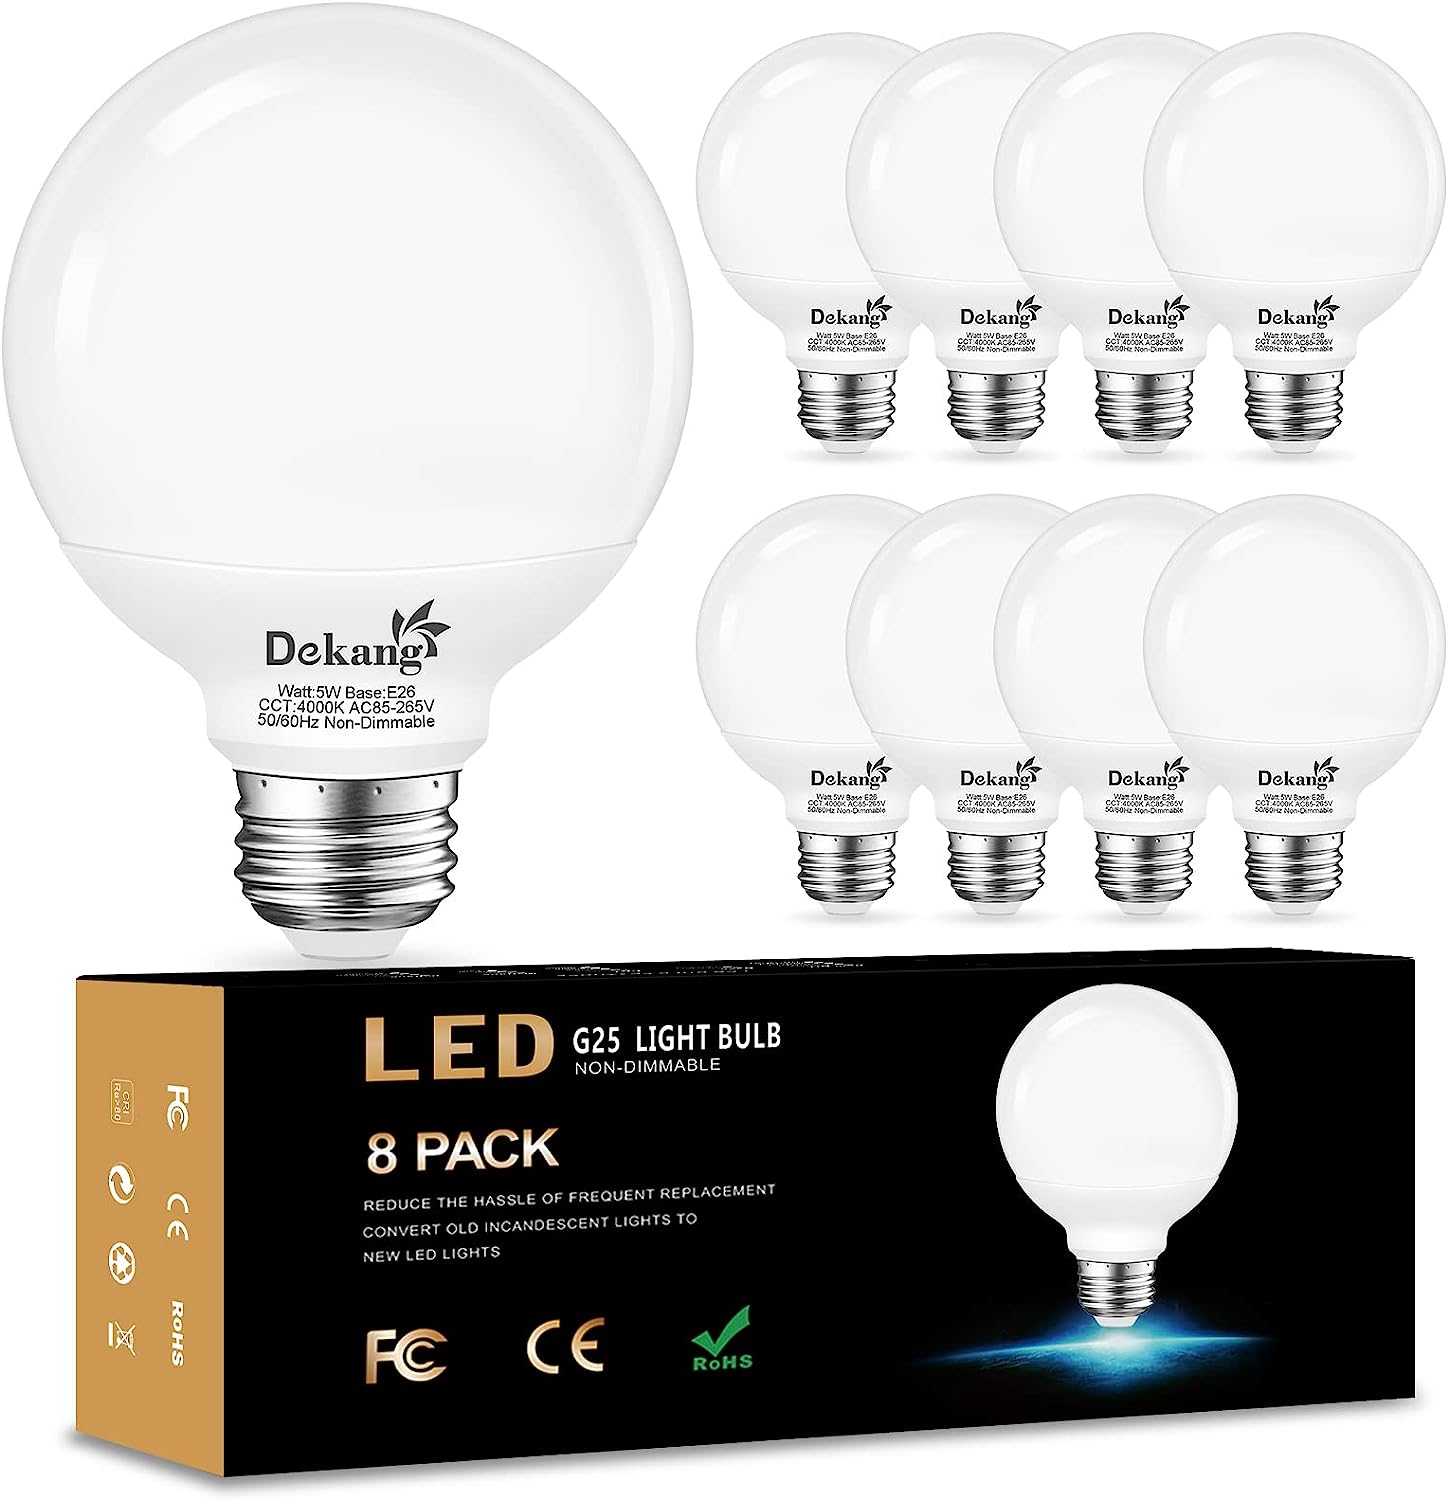 Dekang 8 Pack LED Vanity Light Bulbs for Bathroom [...]